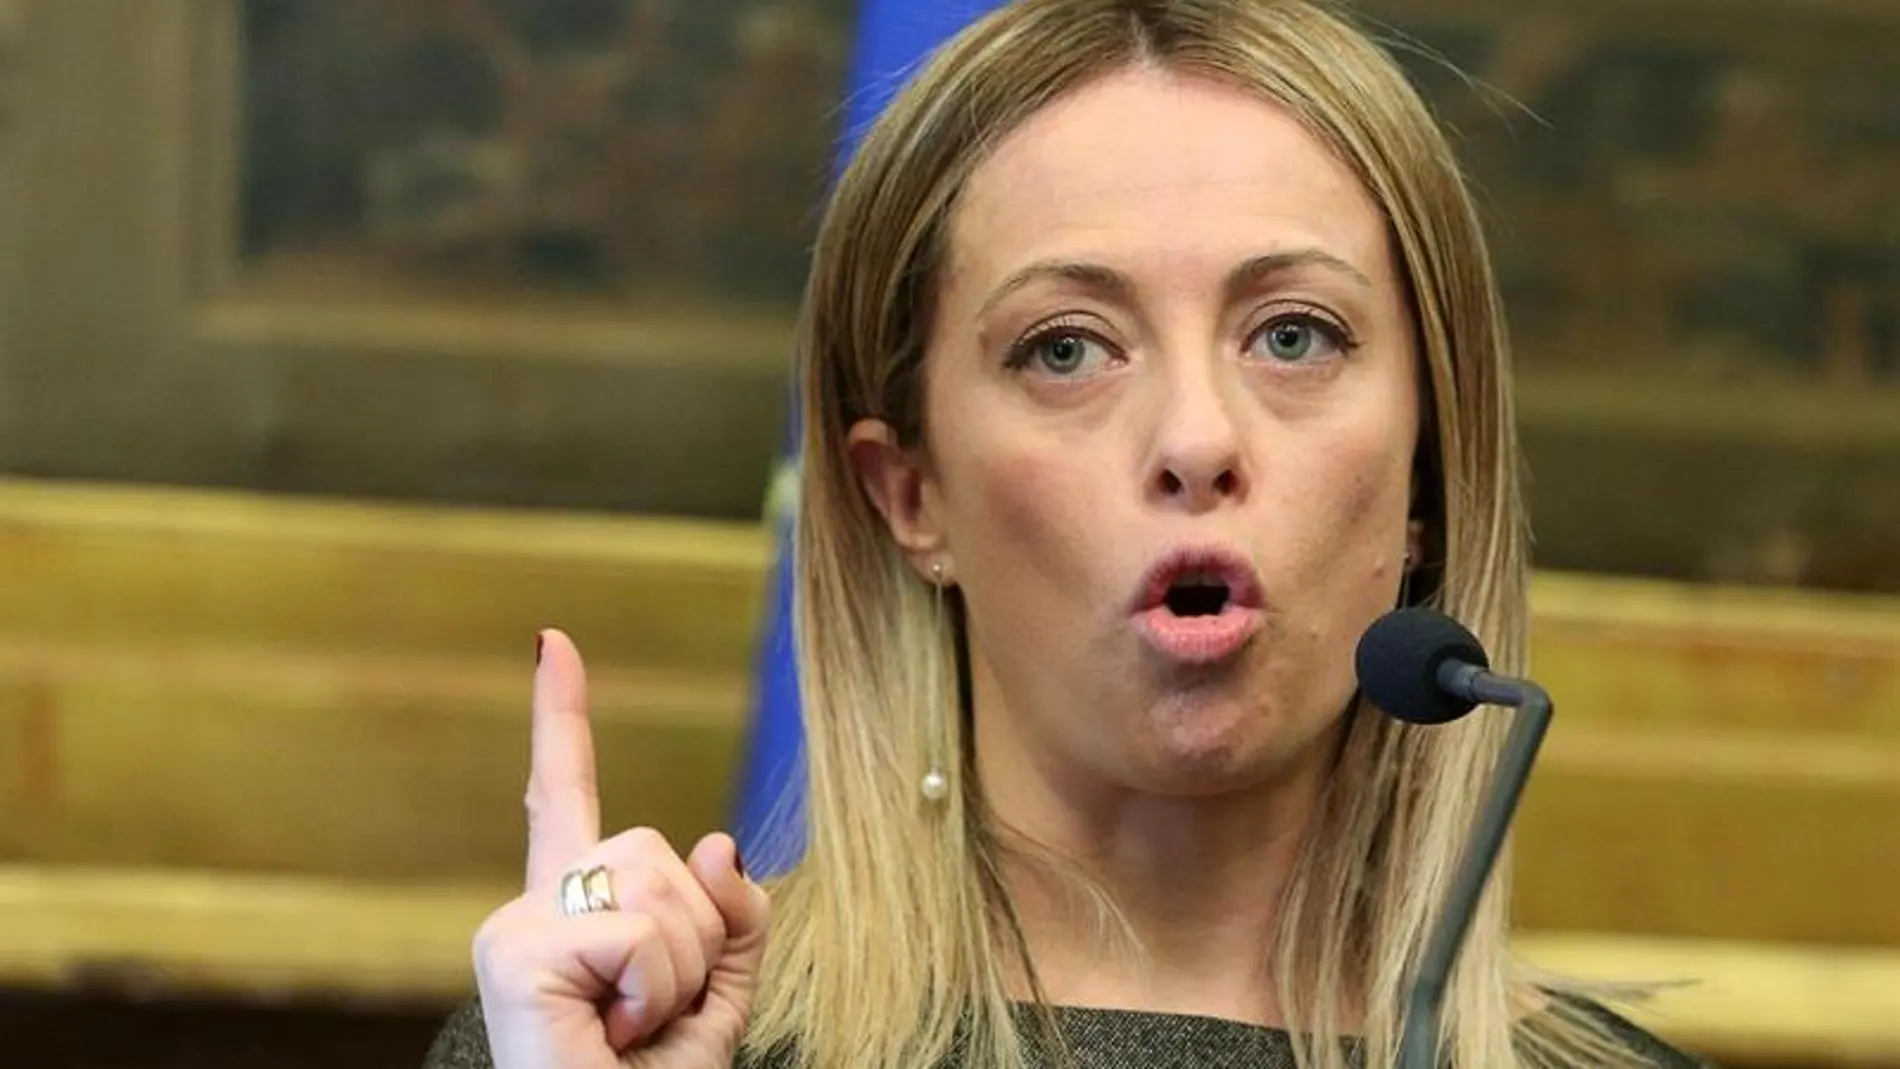 La líder del partido ultraconservador Hermanos de Italia, Giorgia Meloni